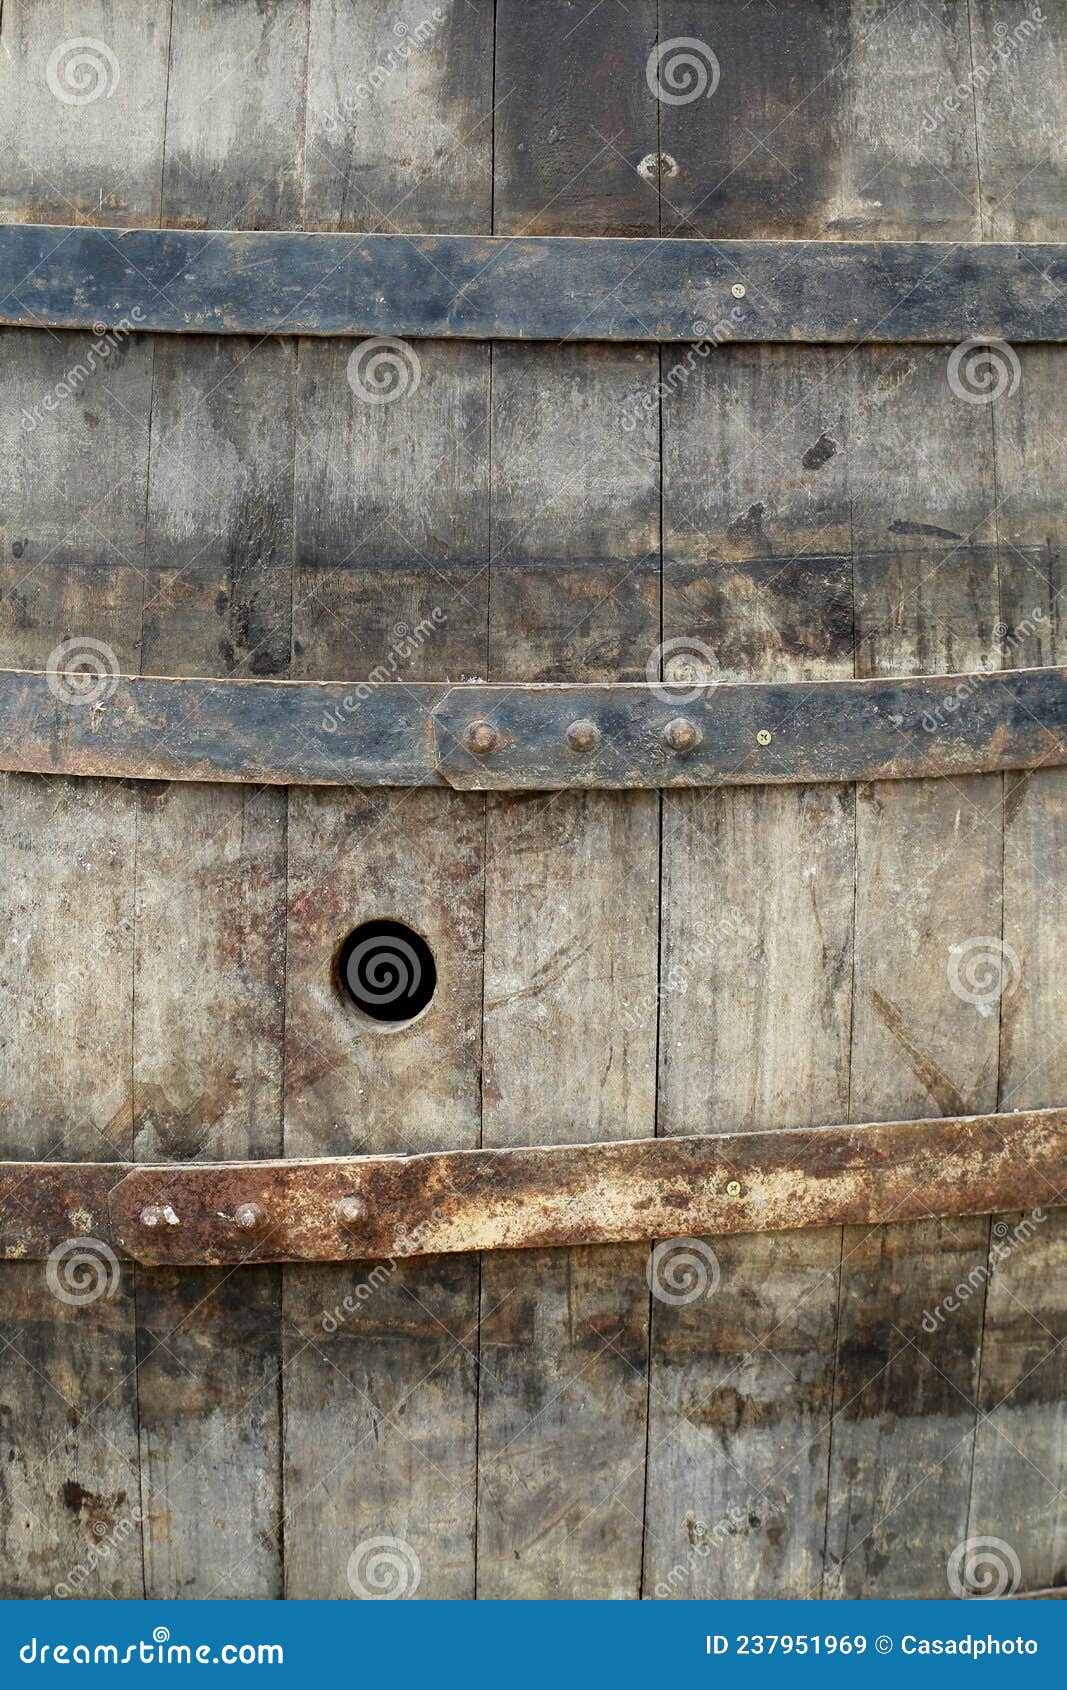 closeup of old barrels